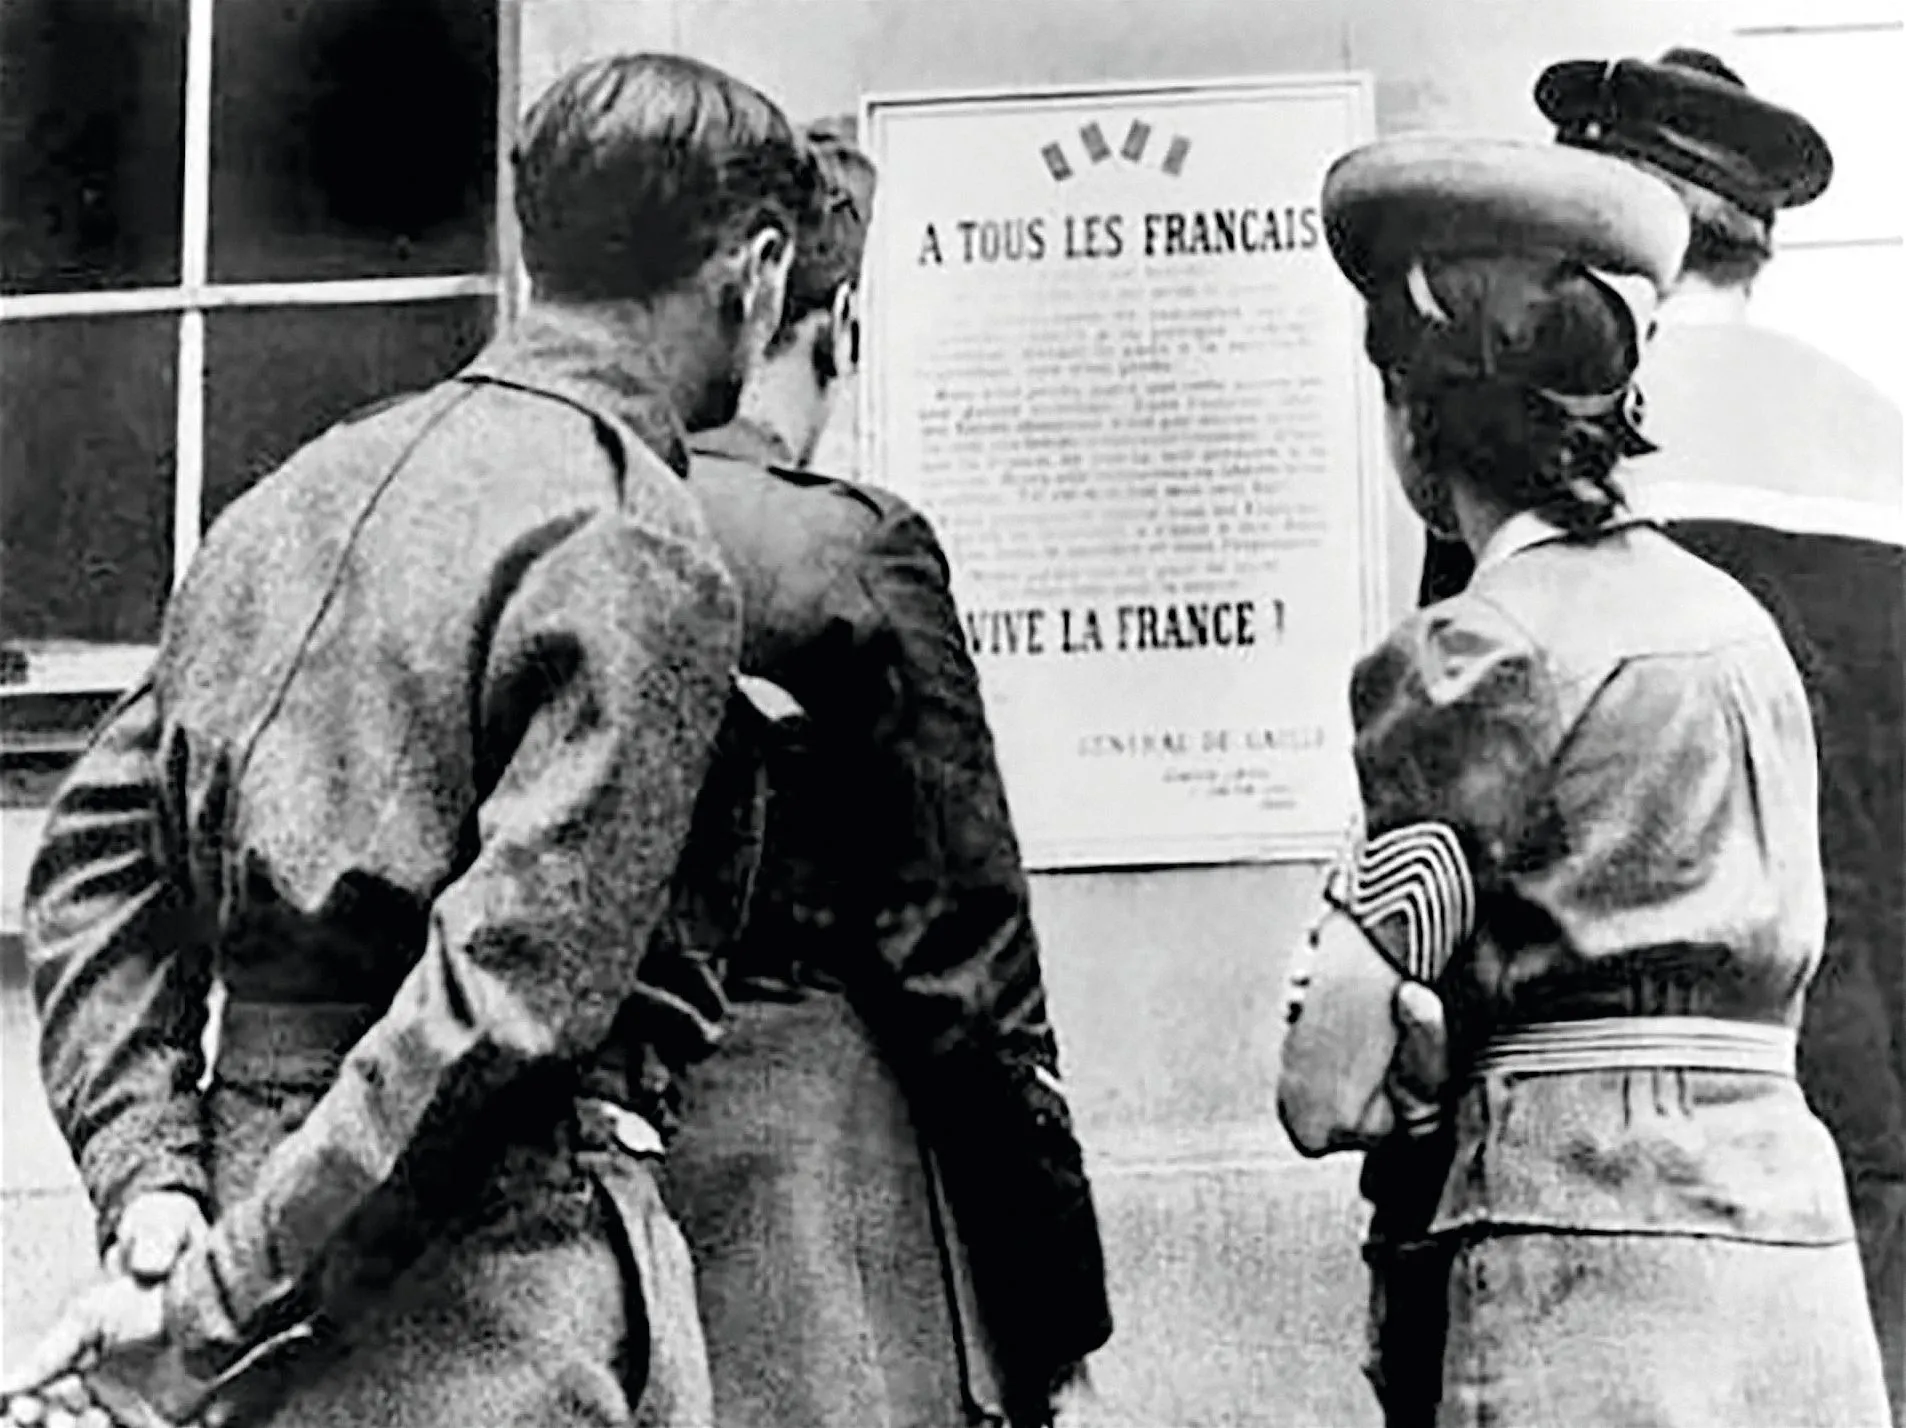 Point de passage - Juin 1940 affiche soldats